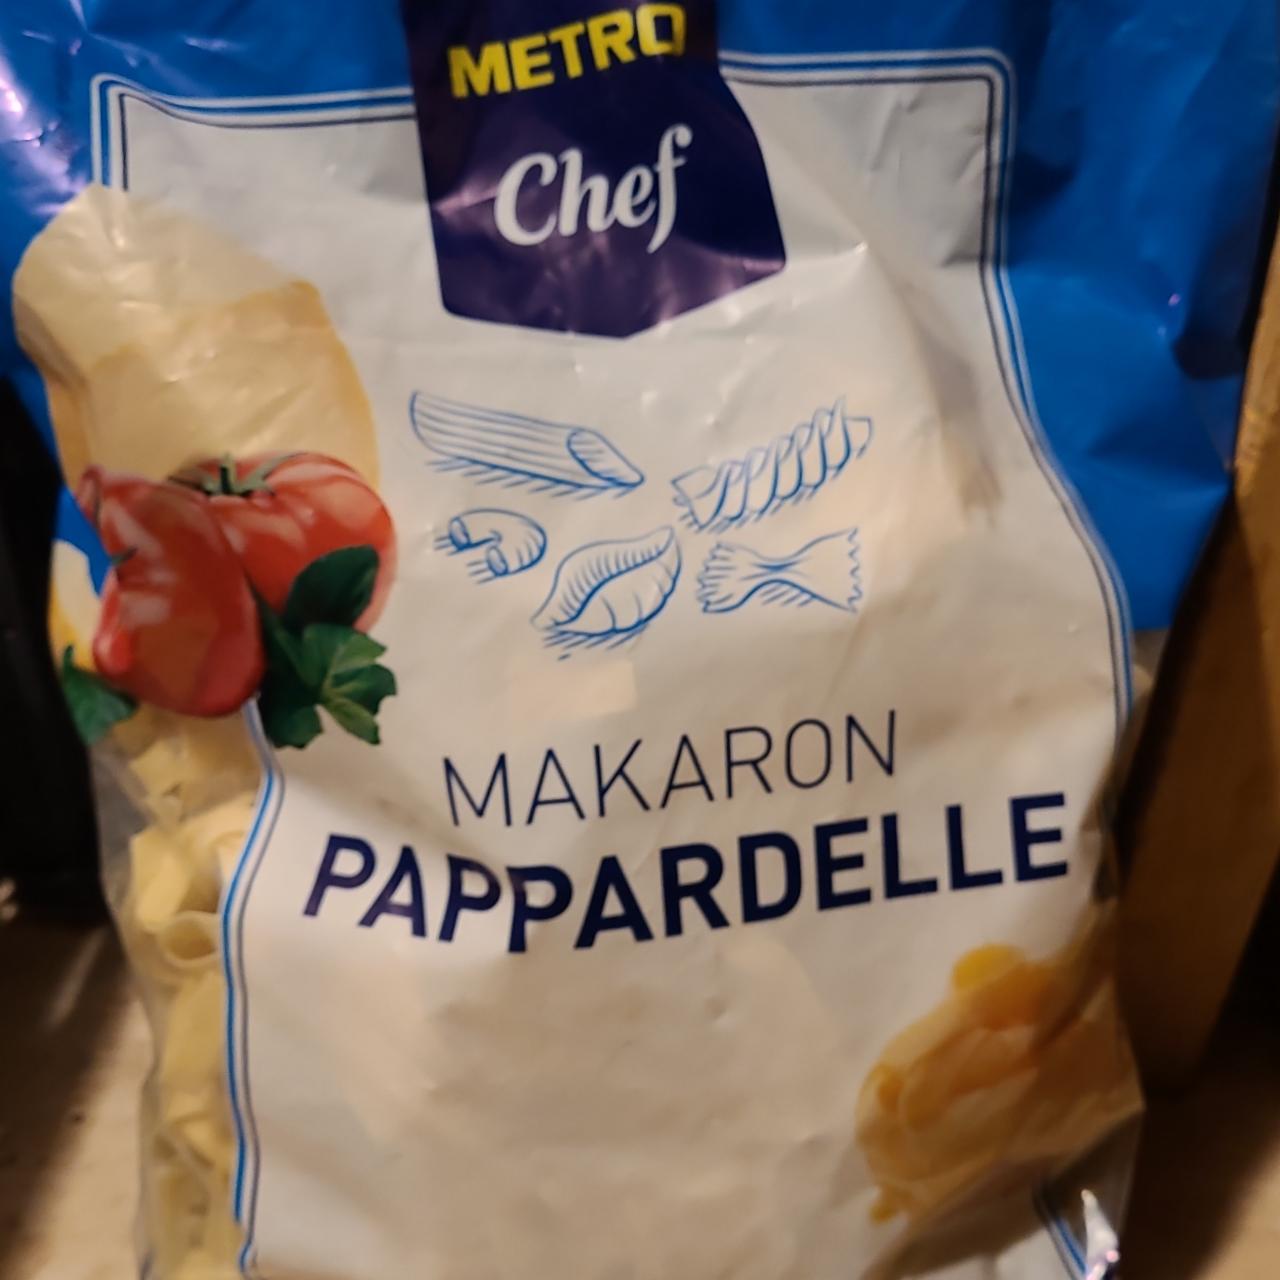 Zdjęcia - Makaron pappardelle Metro chef